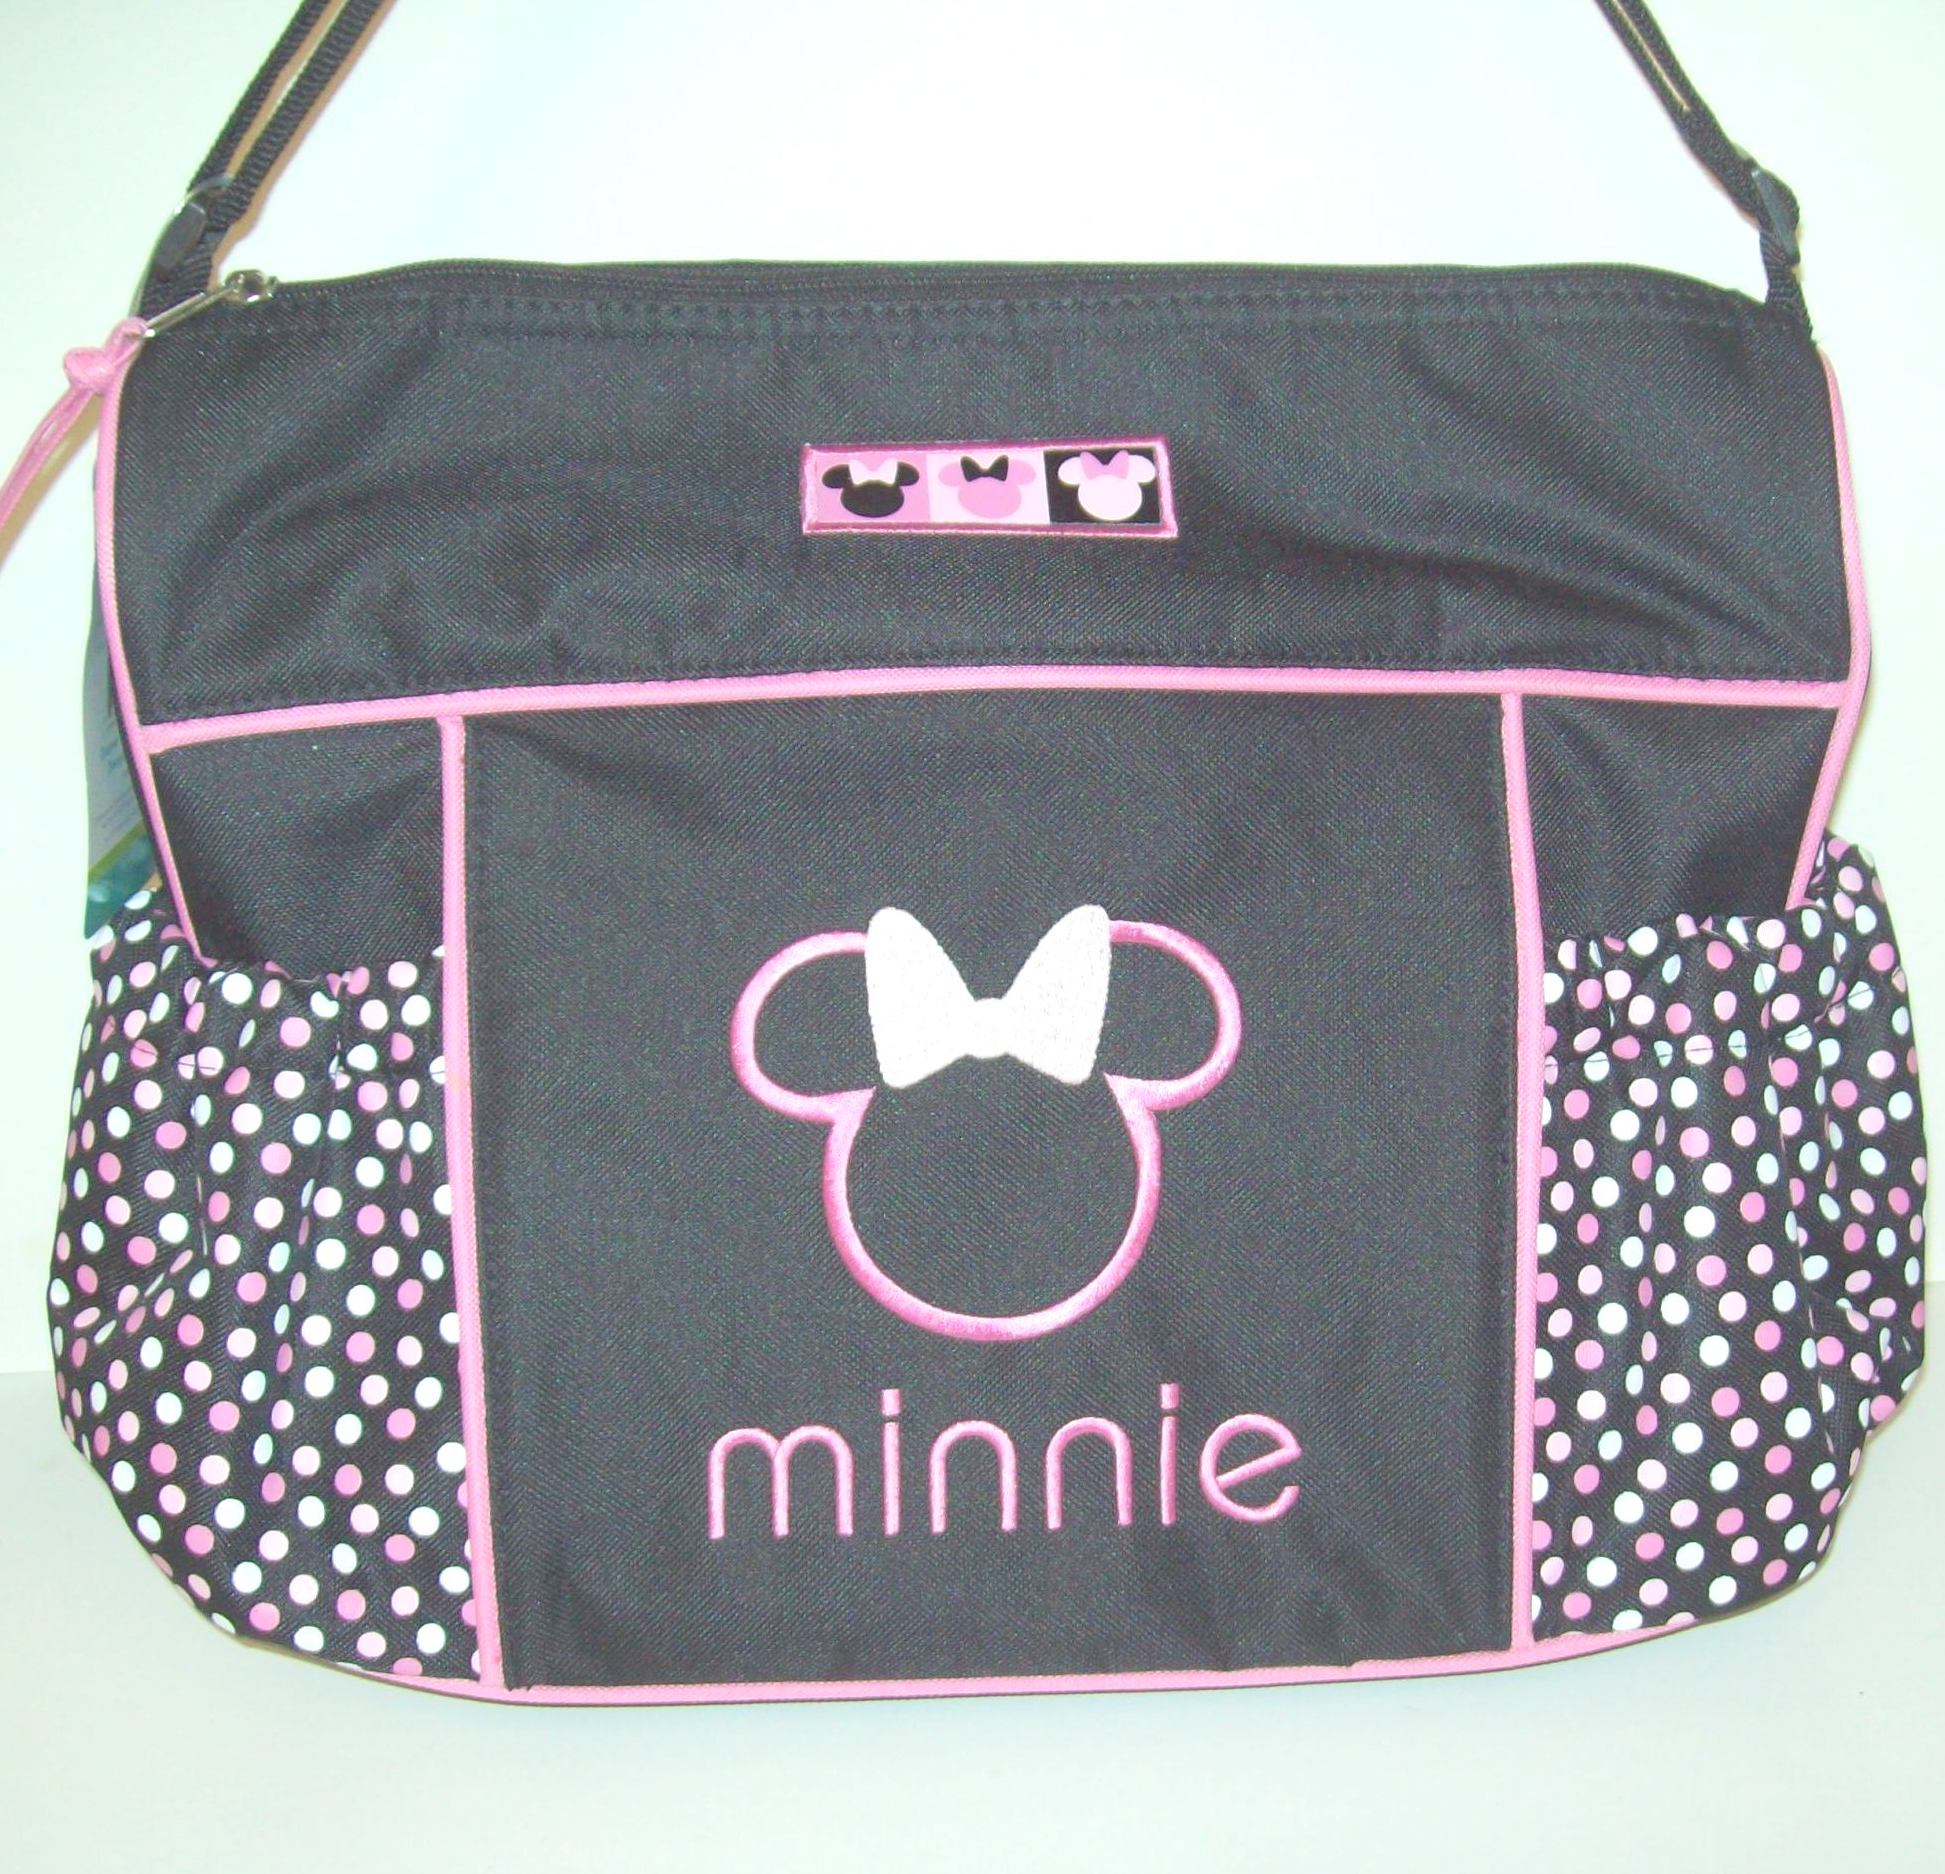 Best Minnie Mouse Bag Design